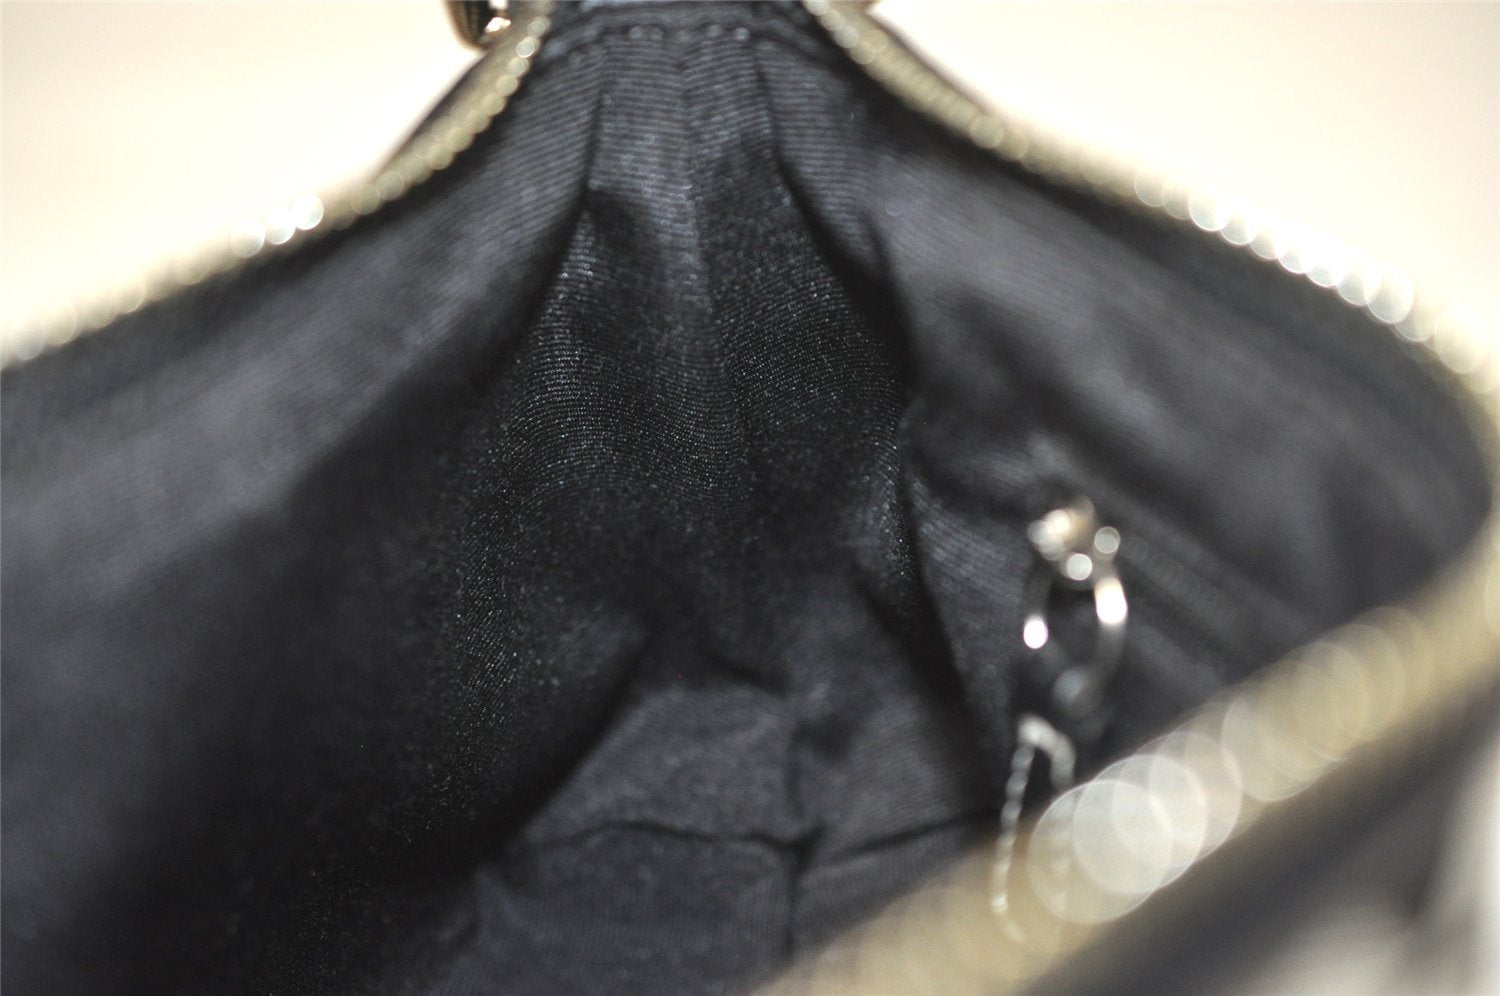 Authentic COACH Signature Shoulder Hand Bag Canvas Leather 6371 Black 3972I